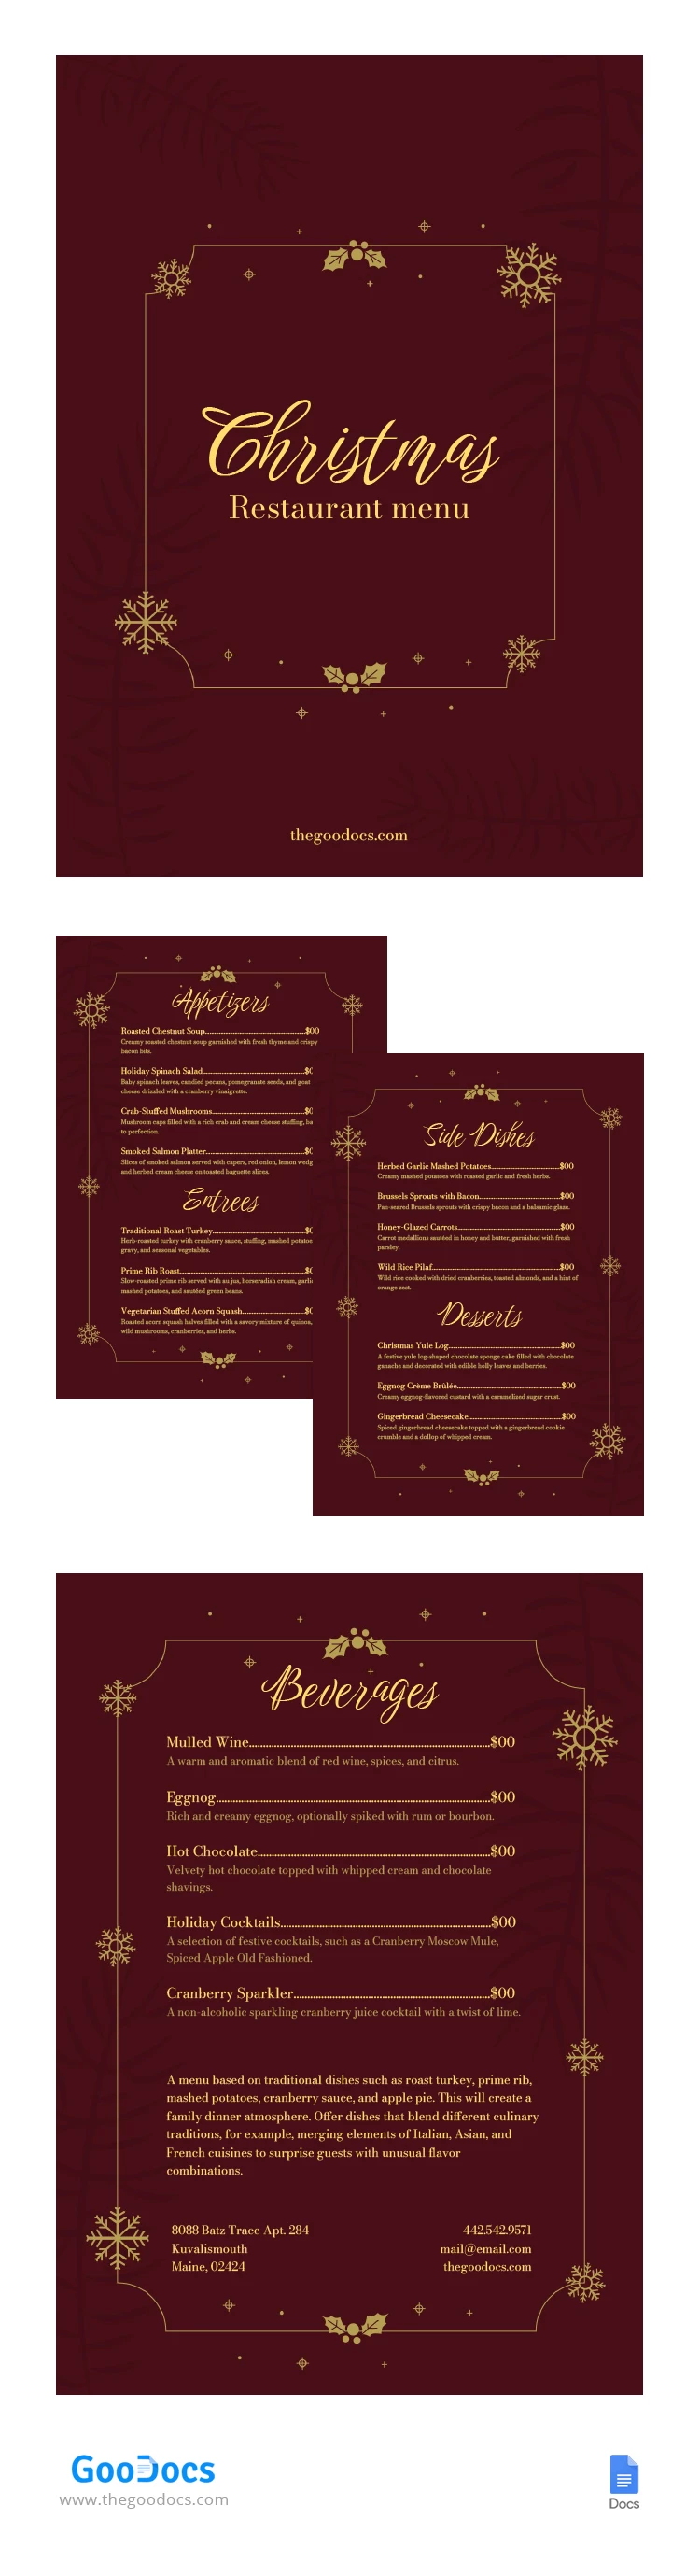 温馨舒适的圣诞节餐厅菜单 - free Google Docs Template - 10066907